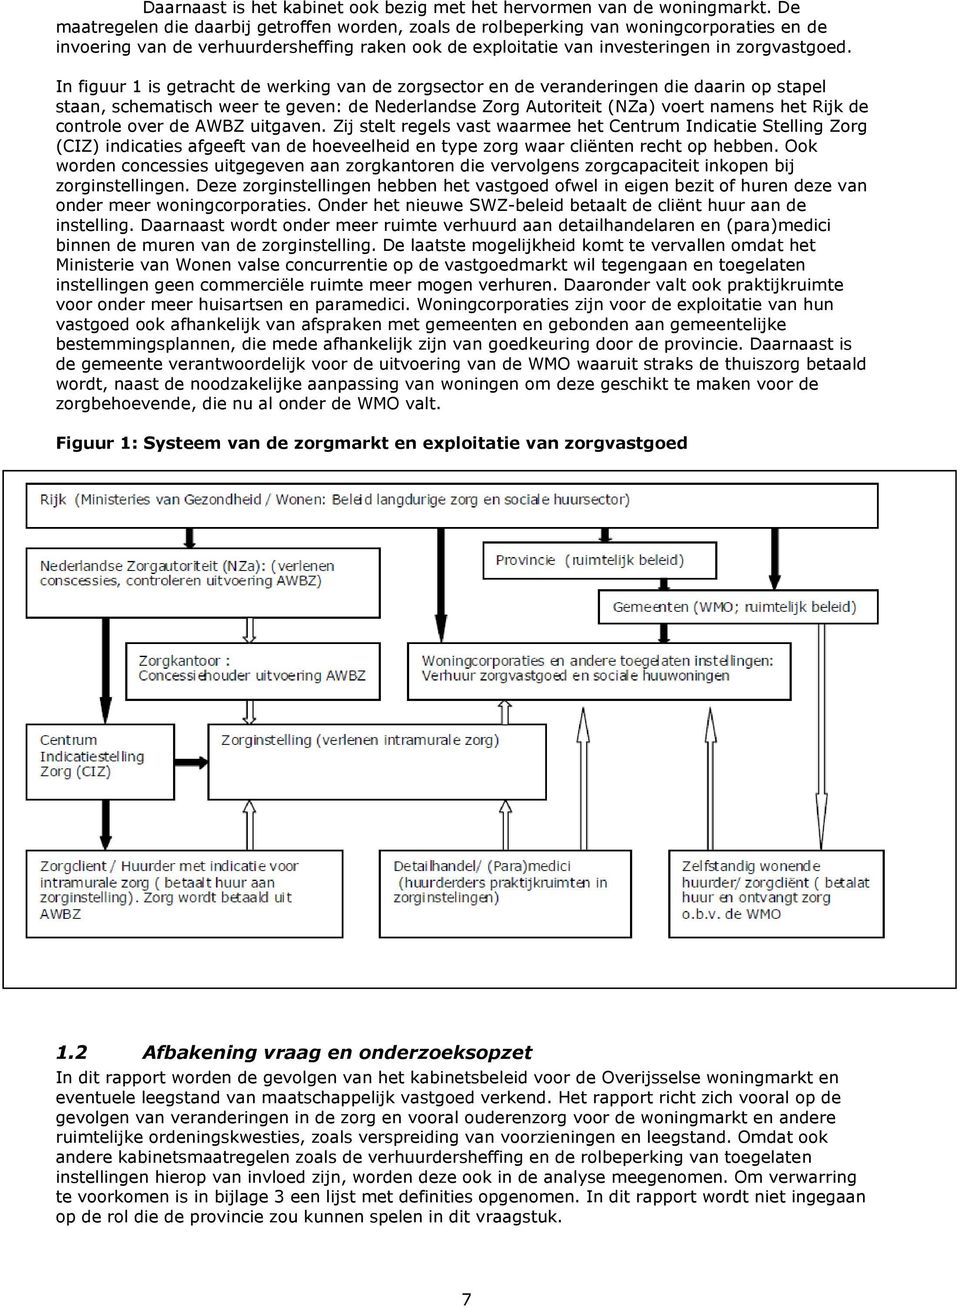 In figuur 1 is getracht de werking van de zorgsector en de veranderingen die daarin op stapel staan, schematisch weer te geven: de Nederlandse Zorg Autoriteit (NZa) voert namens het Rijk de controle